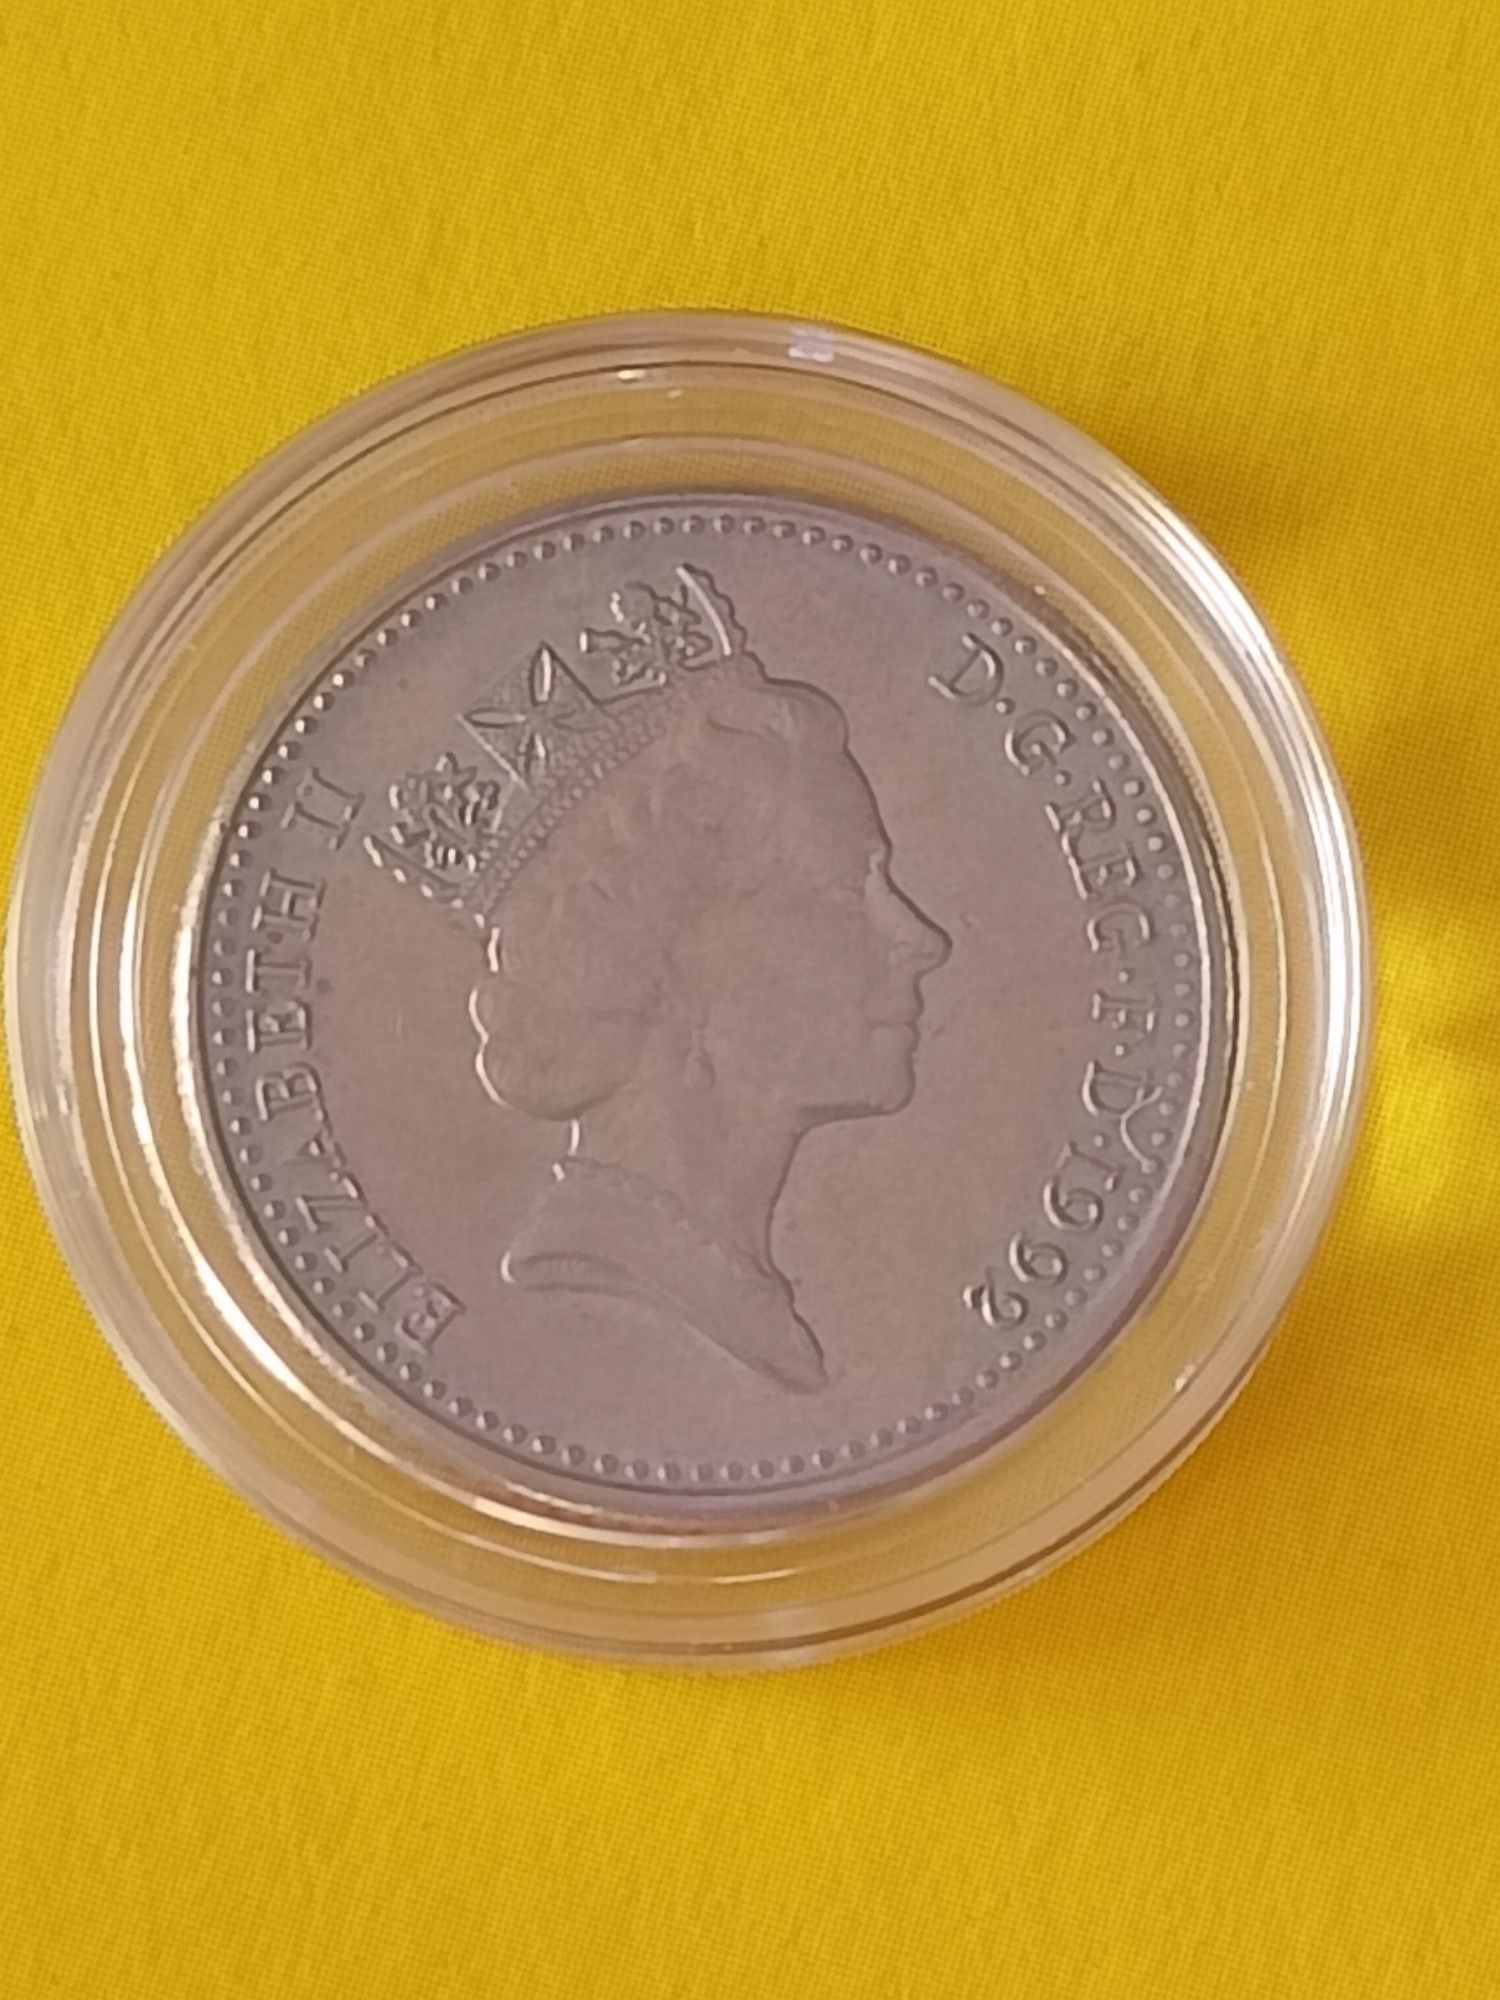 Monety brytyjskie - różne roczniki - kapsle - polecam